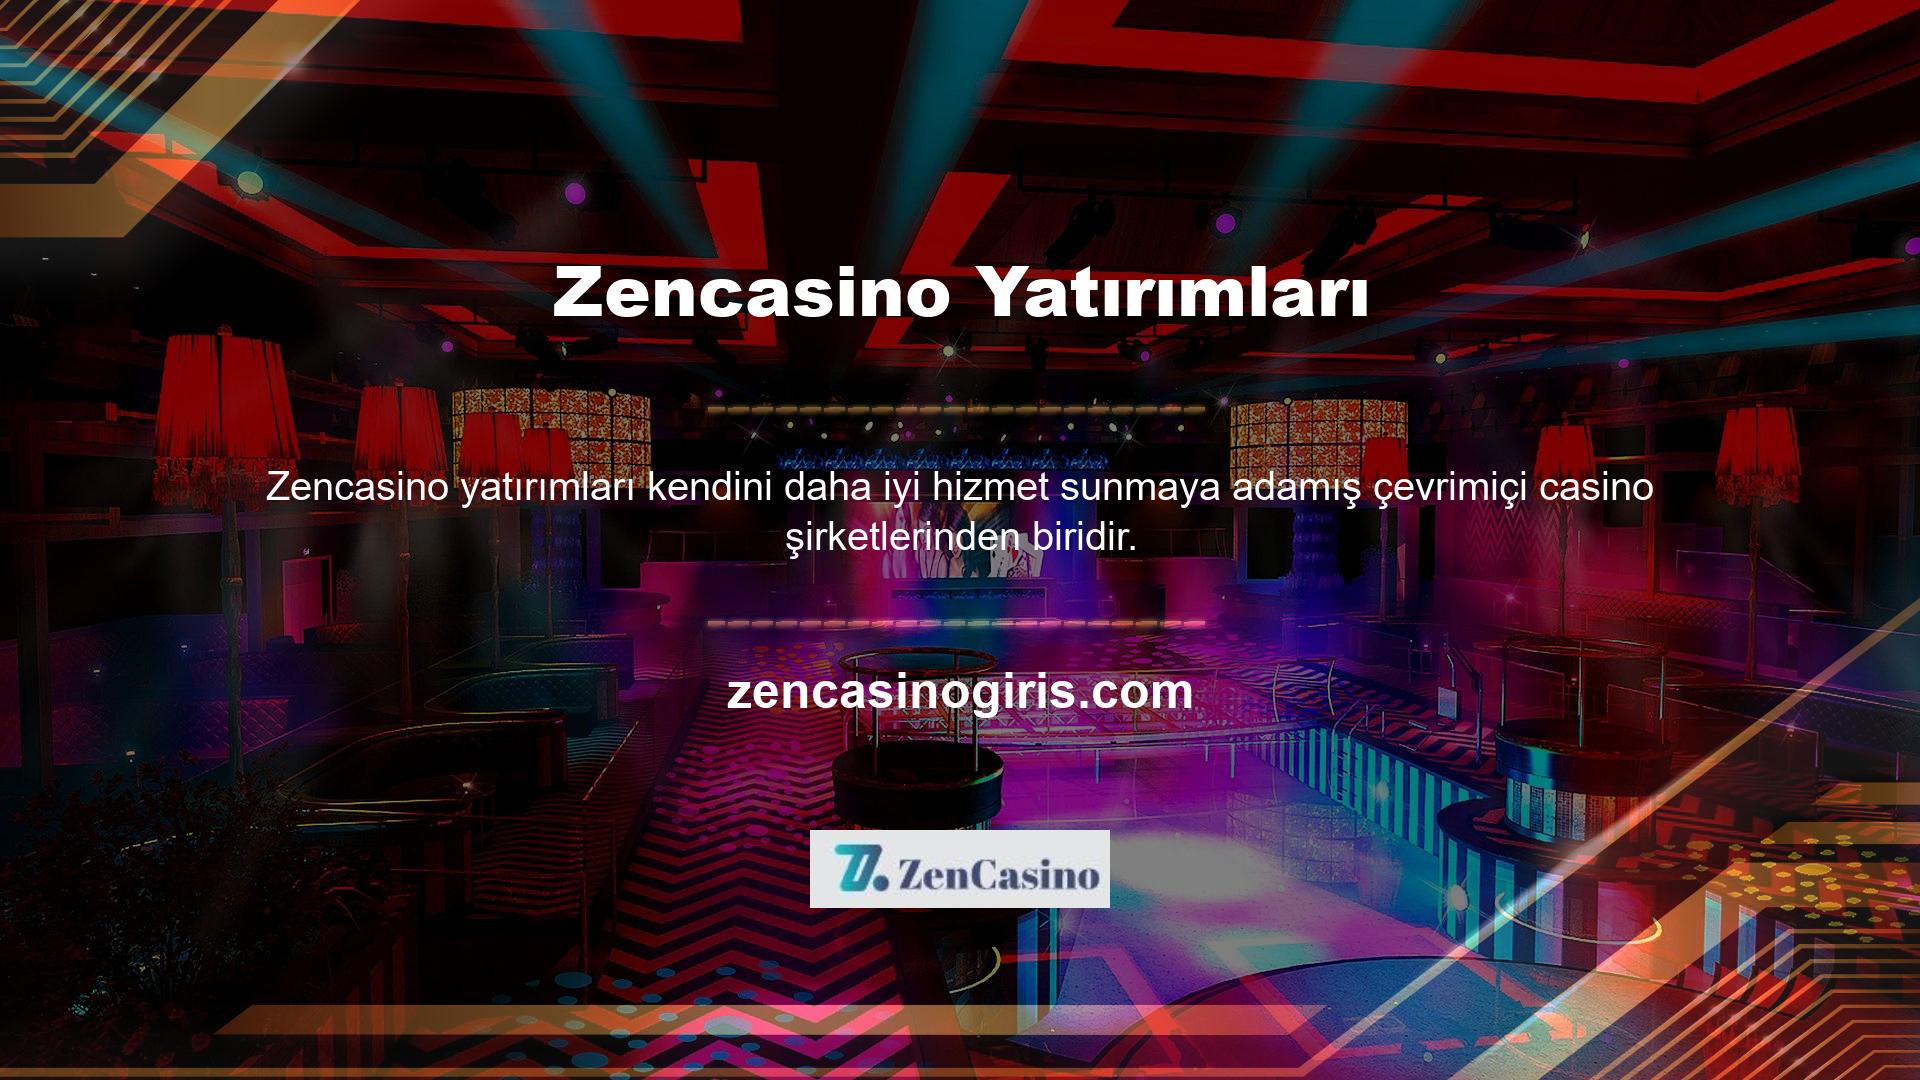 Öte yandan Zencasino web sitesi, Türk casino severler için geniş bir ürün yelpazesi sunmaktadır